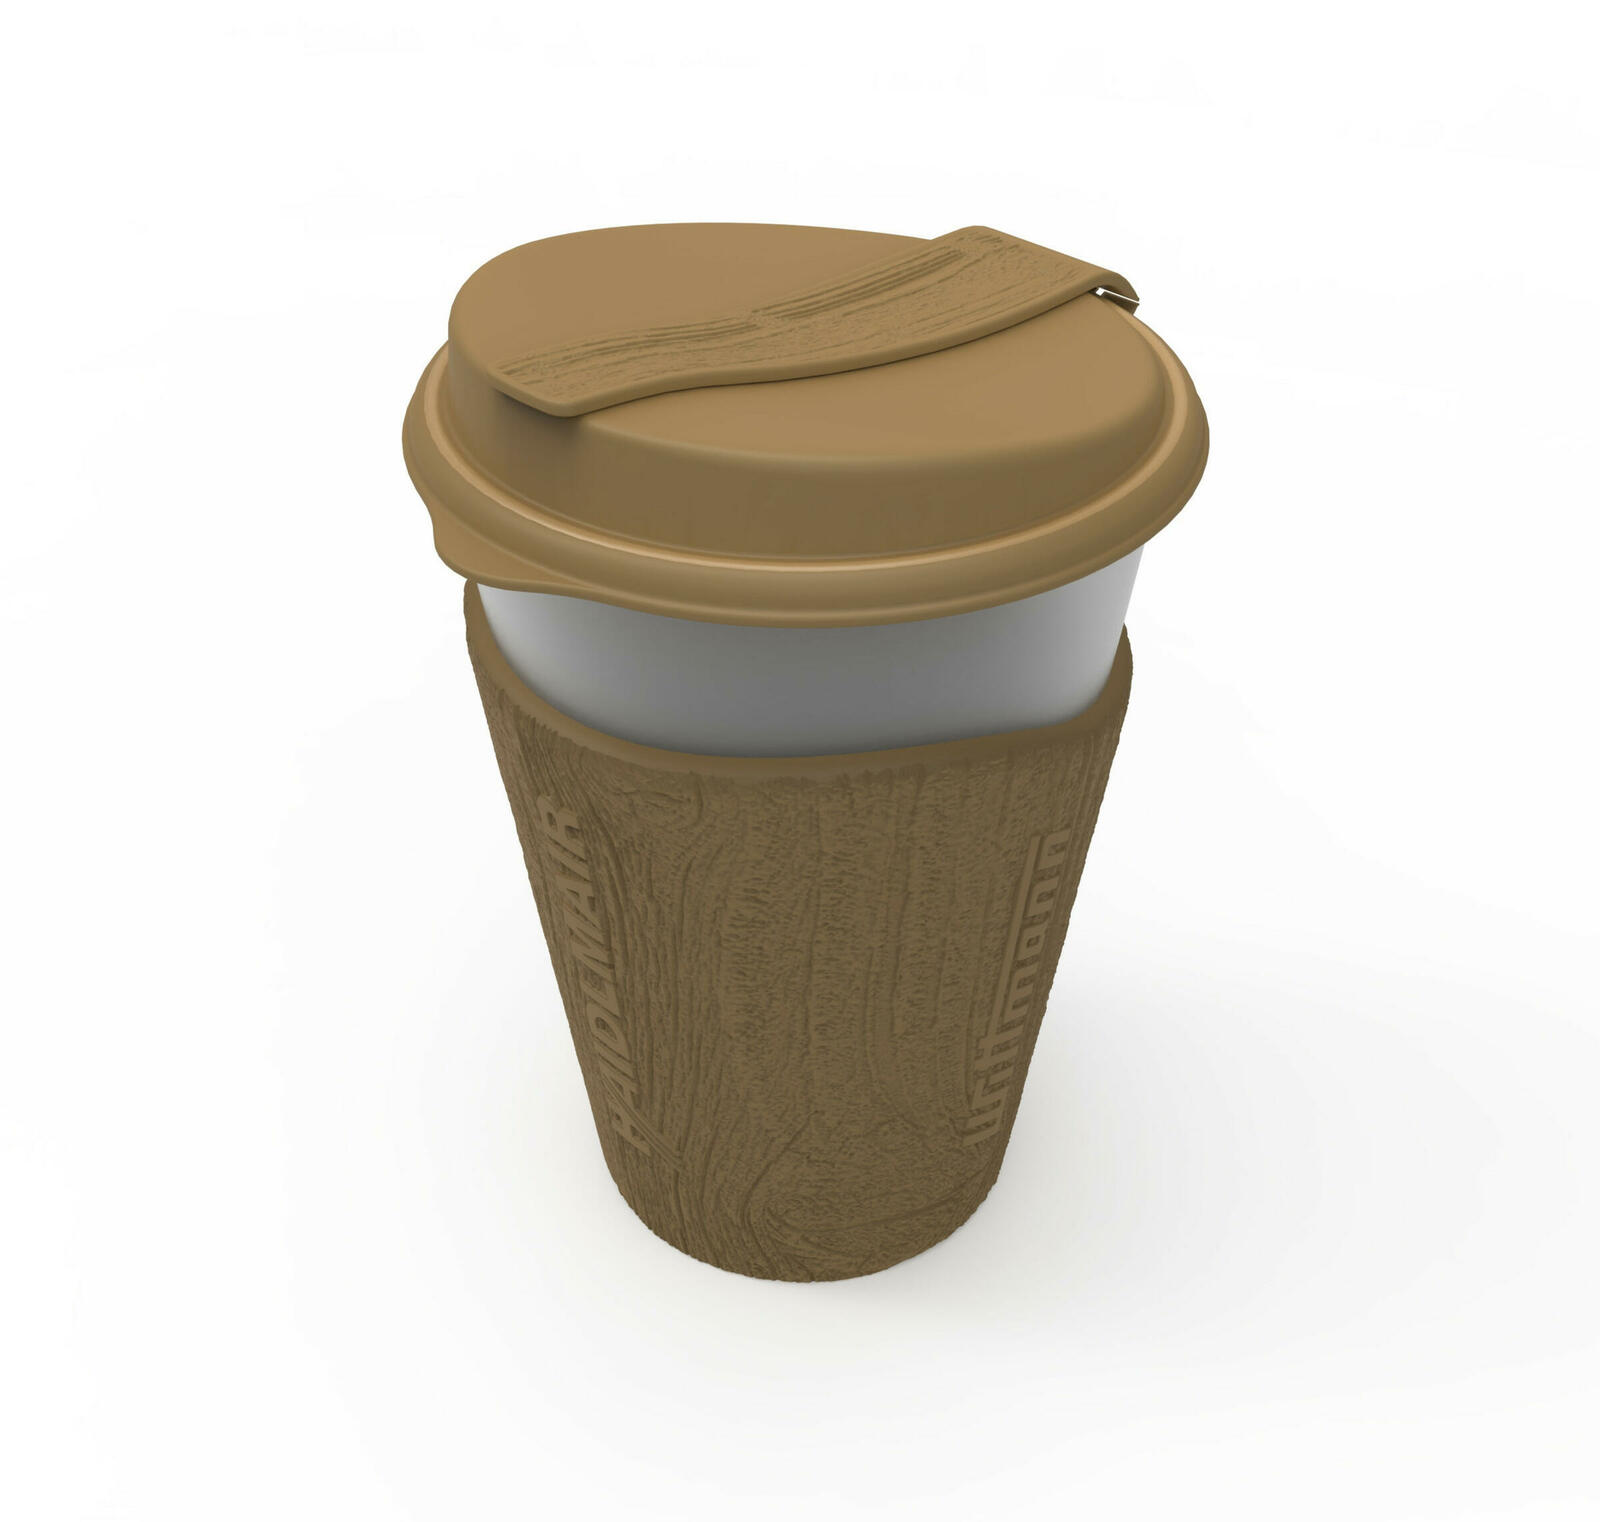 Dieser wiederverwendbare Coffee-to-go-Becher wird in Drei-Komponenten-Technologie mit erneuerbaren Rohstoffen gefertigt.